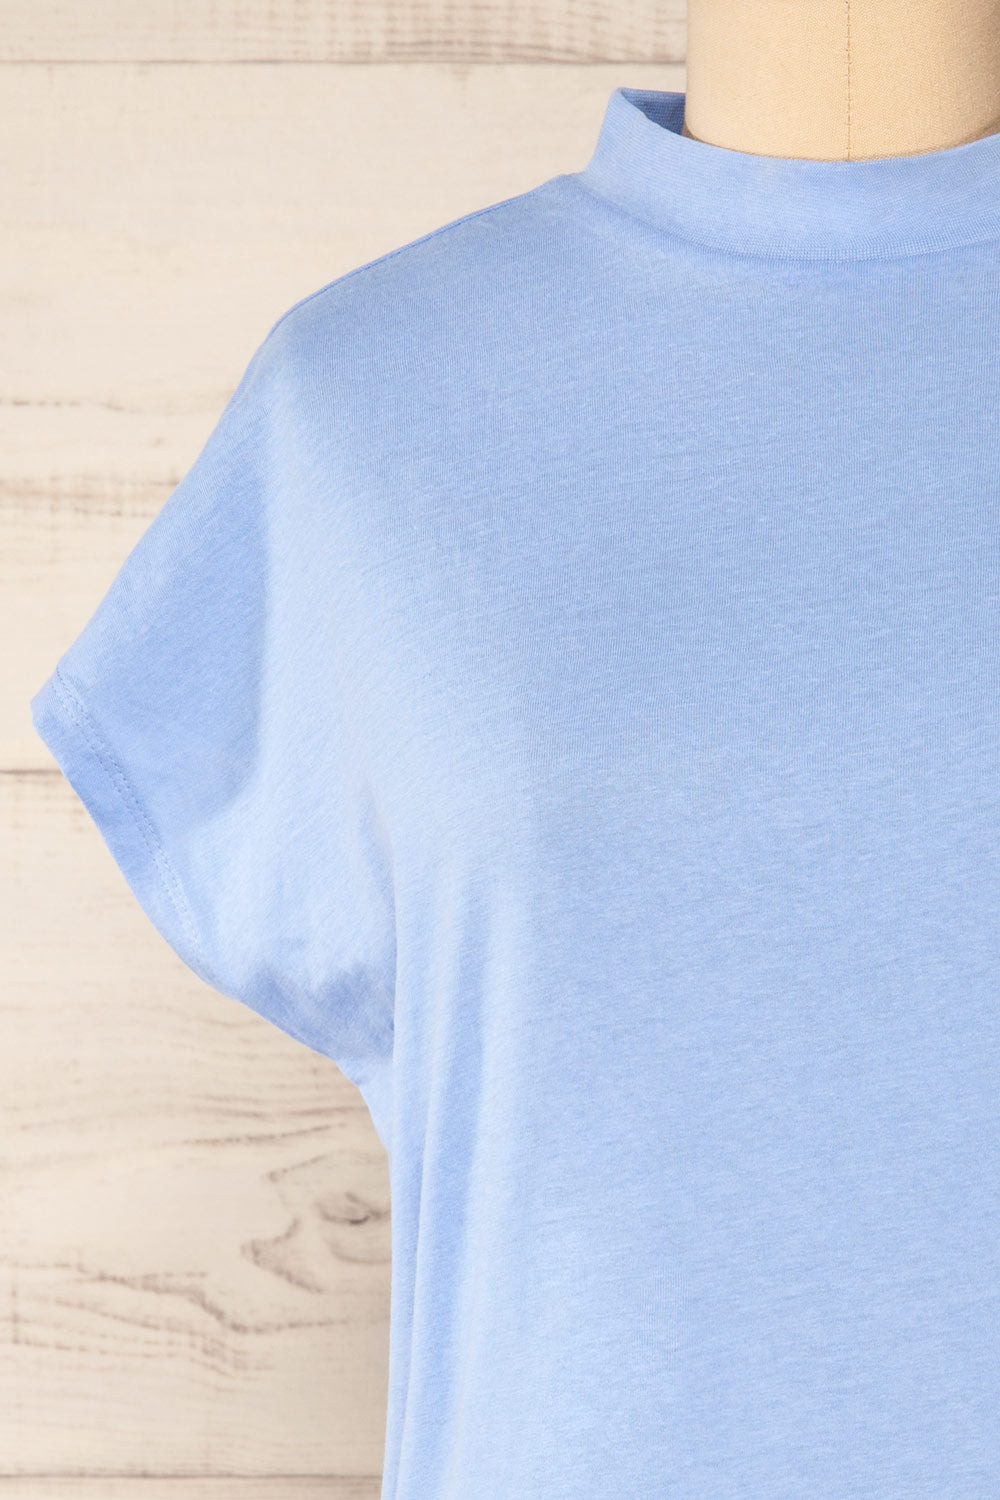 Egges Blue Short Sleeve Mock Neck T-Shirt | La petite garçonne front close-up